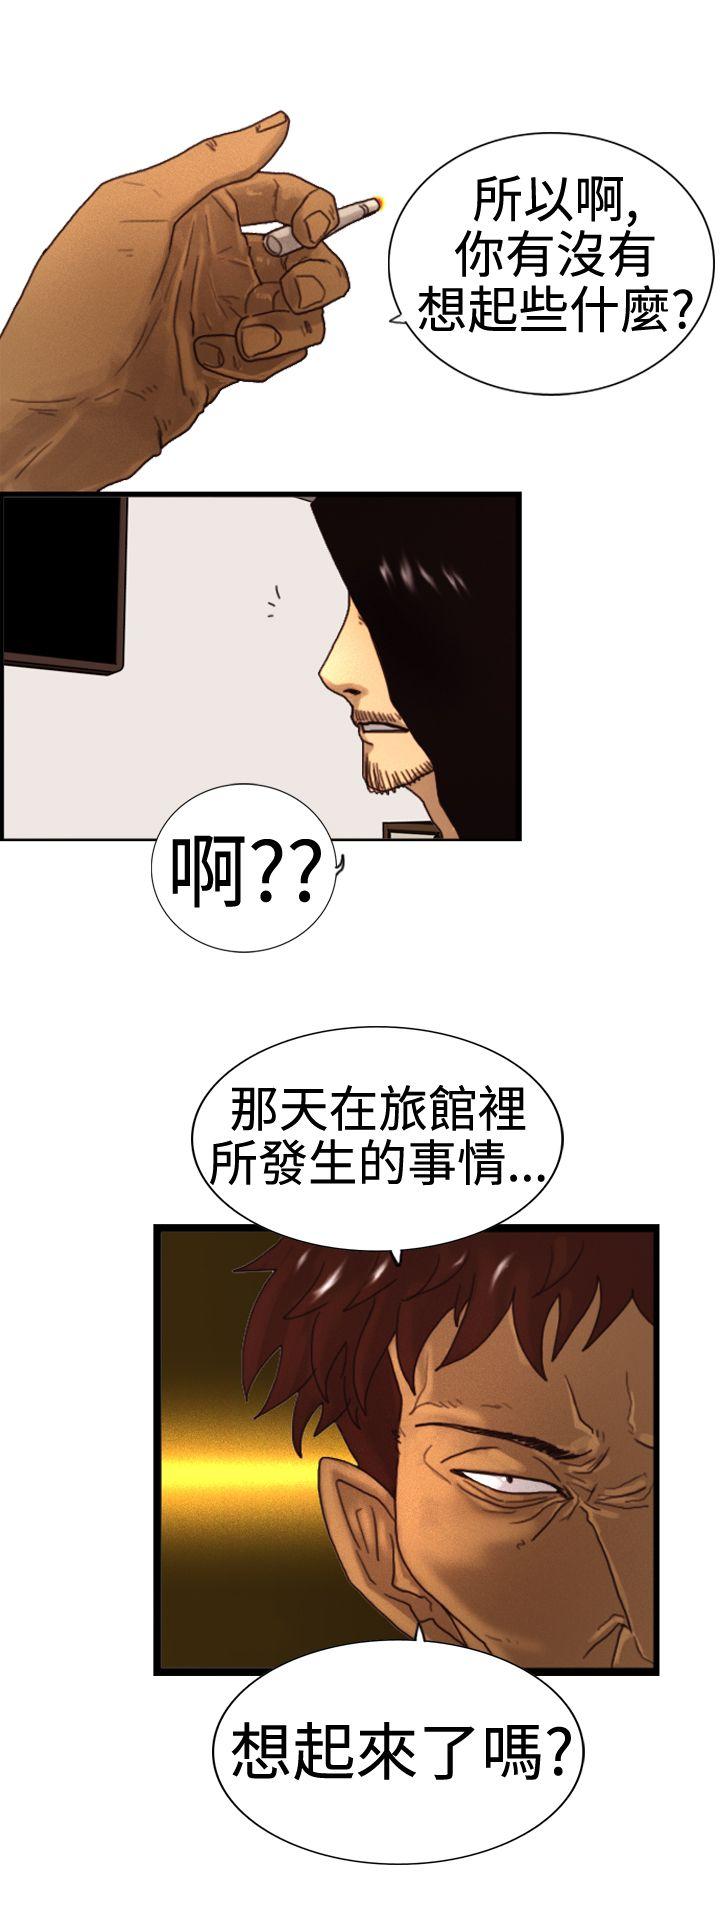 韩国污漫画 覺醒(完結) 第3话微动 24